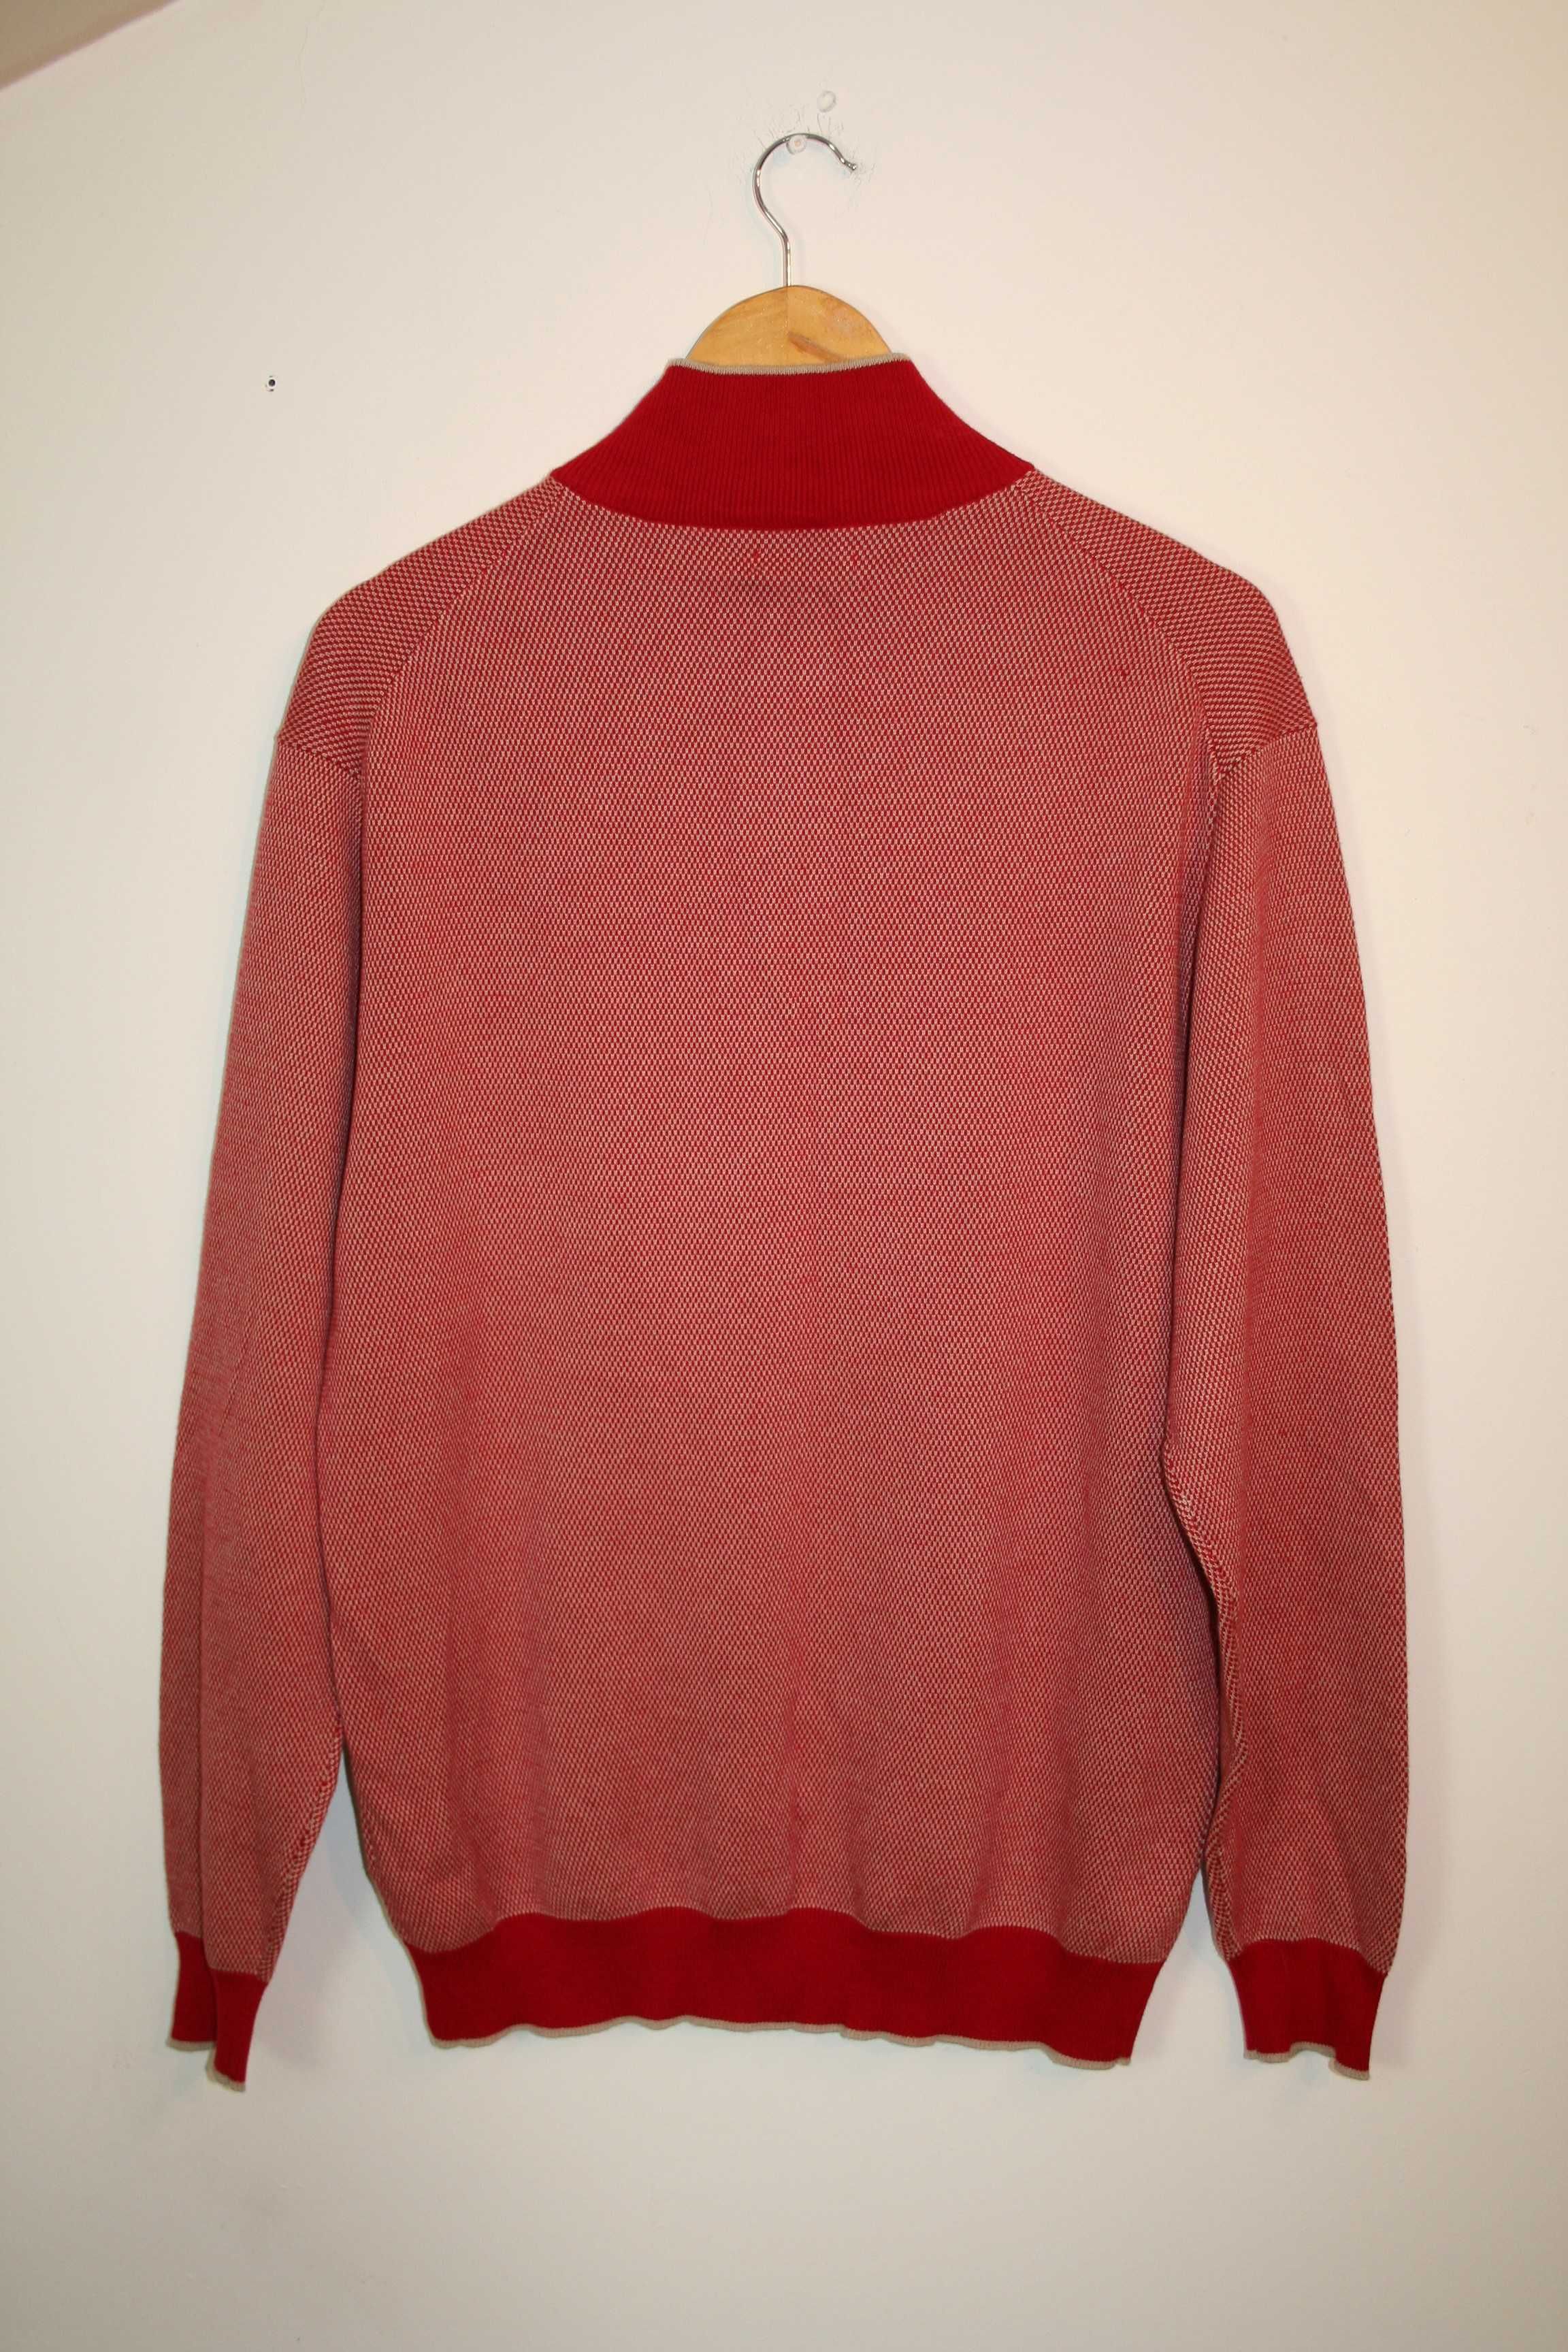 SweterBATISTINI Cotton Sweter Retro Rozmiar odzieży męskiej: L